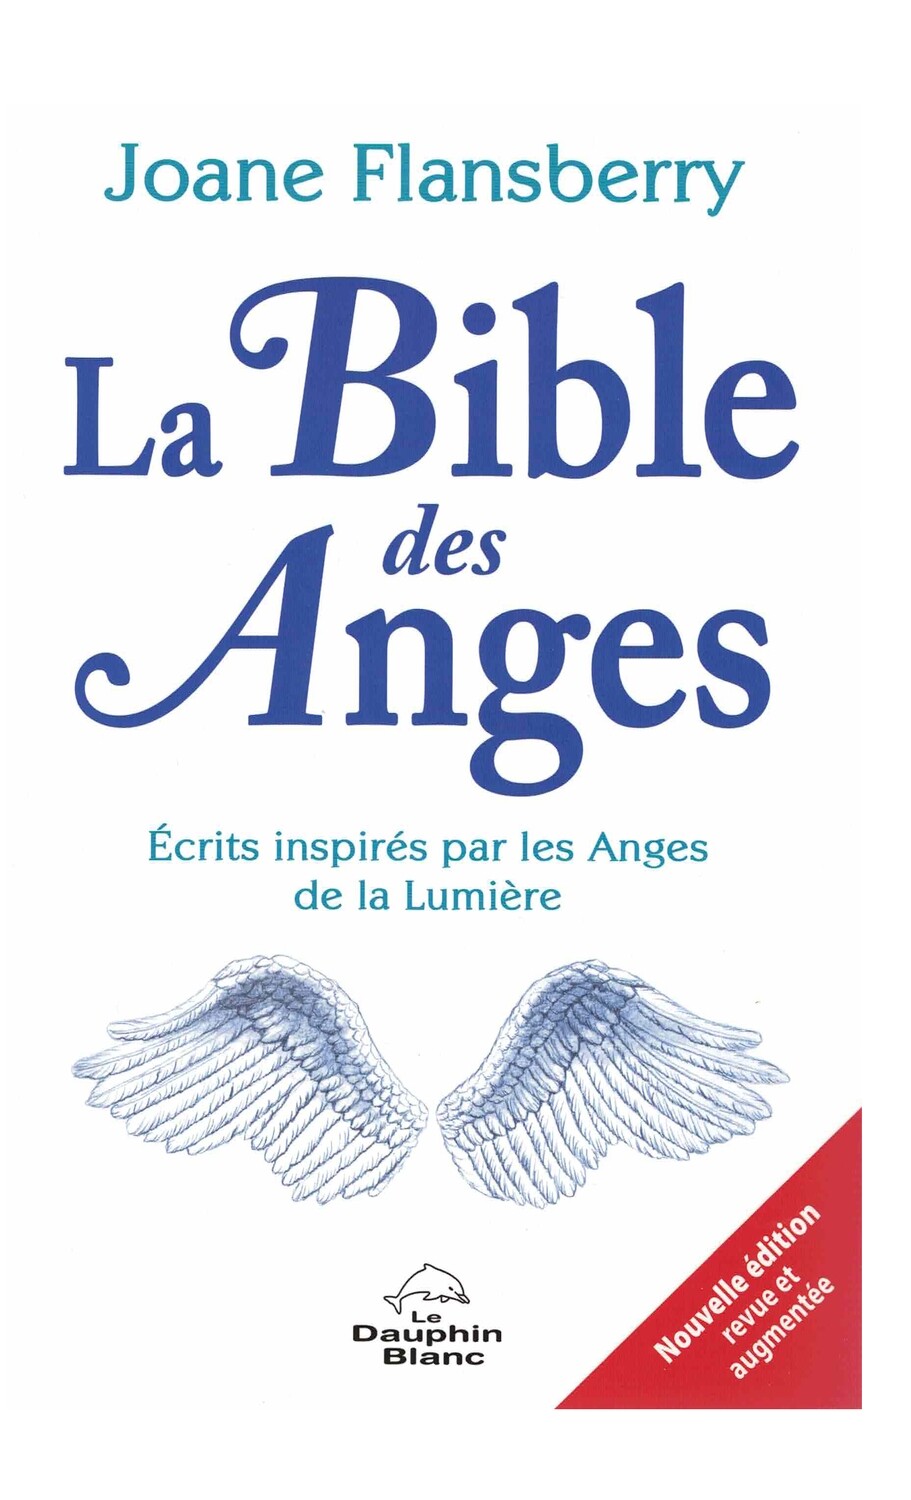 La bible des Anges